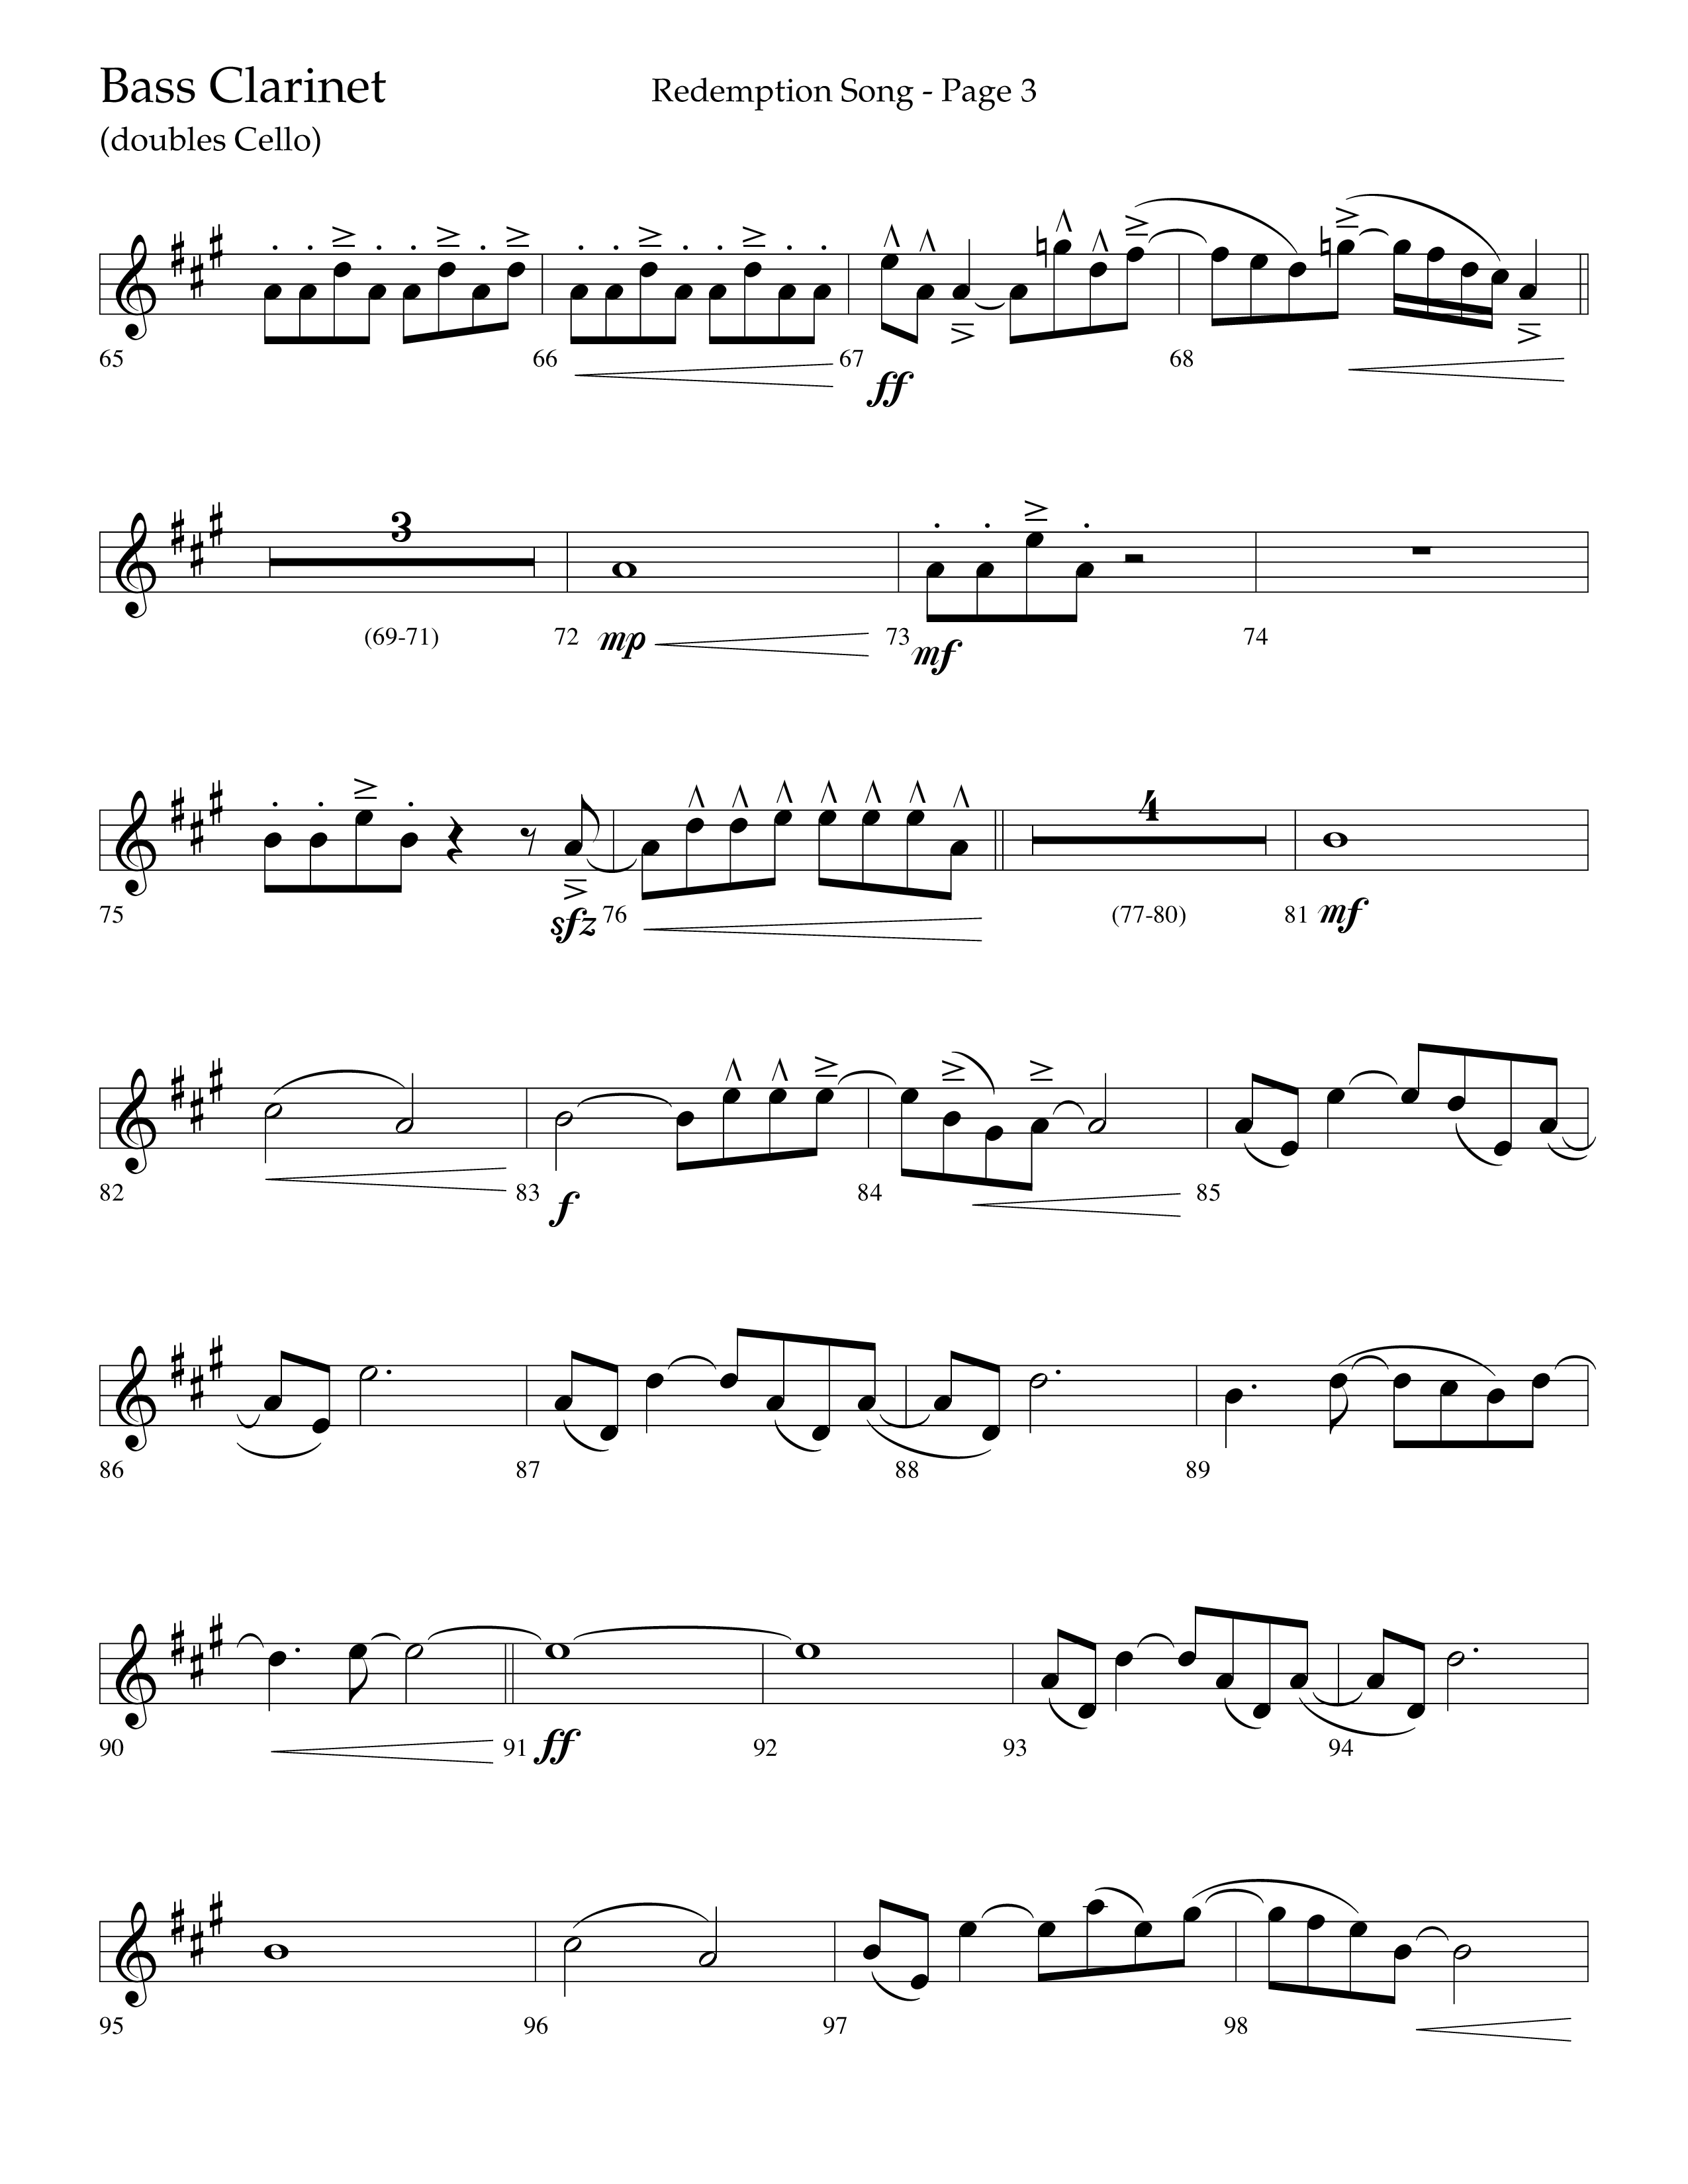 Redemption Song (Choral Anthem SATB) Bass Clarinet (Lifeway Choral / Arr. Cliff Duren)